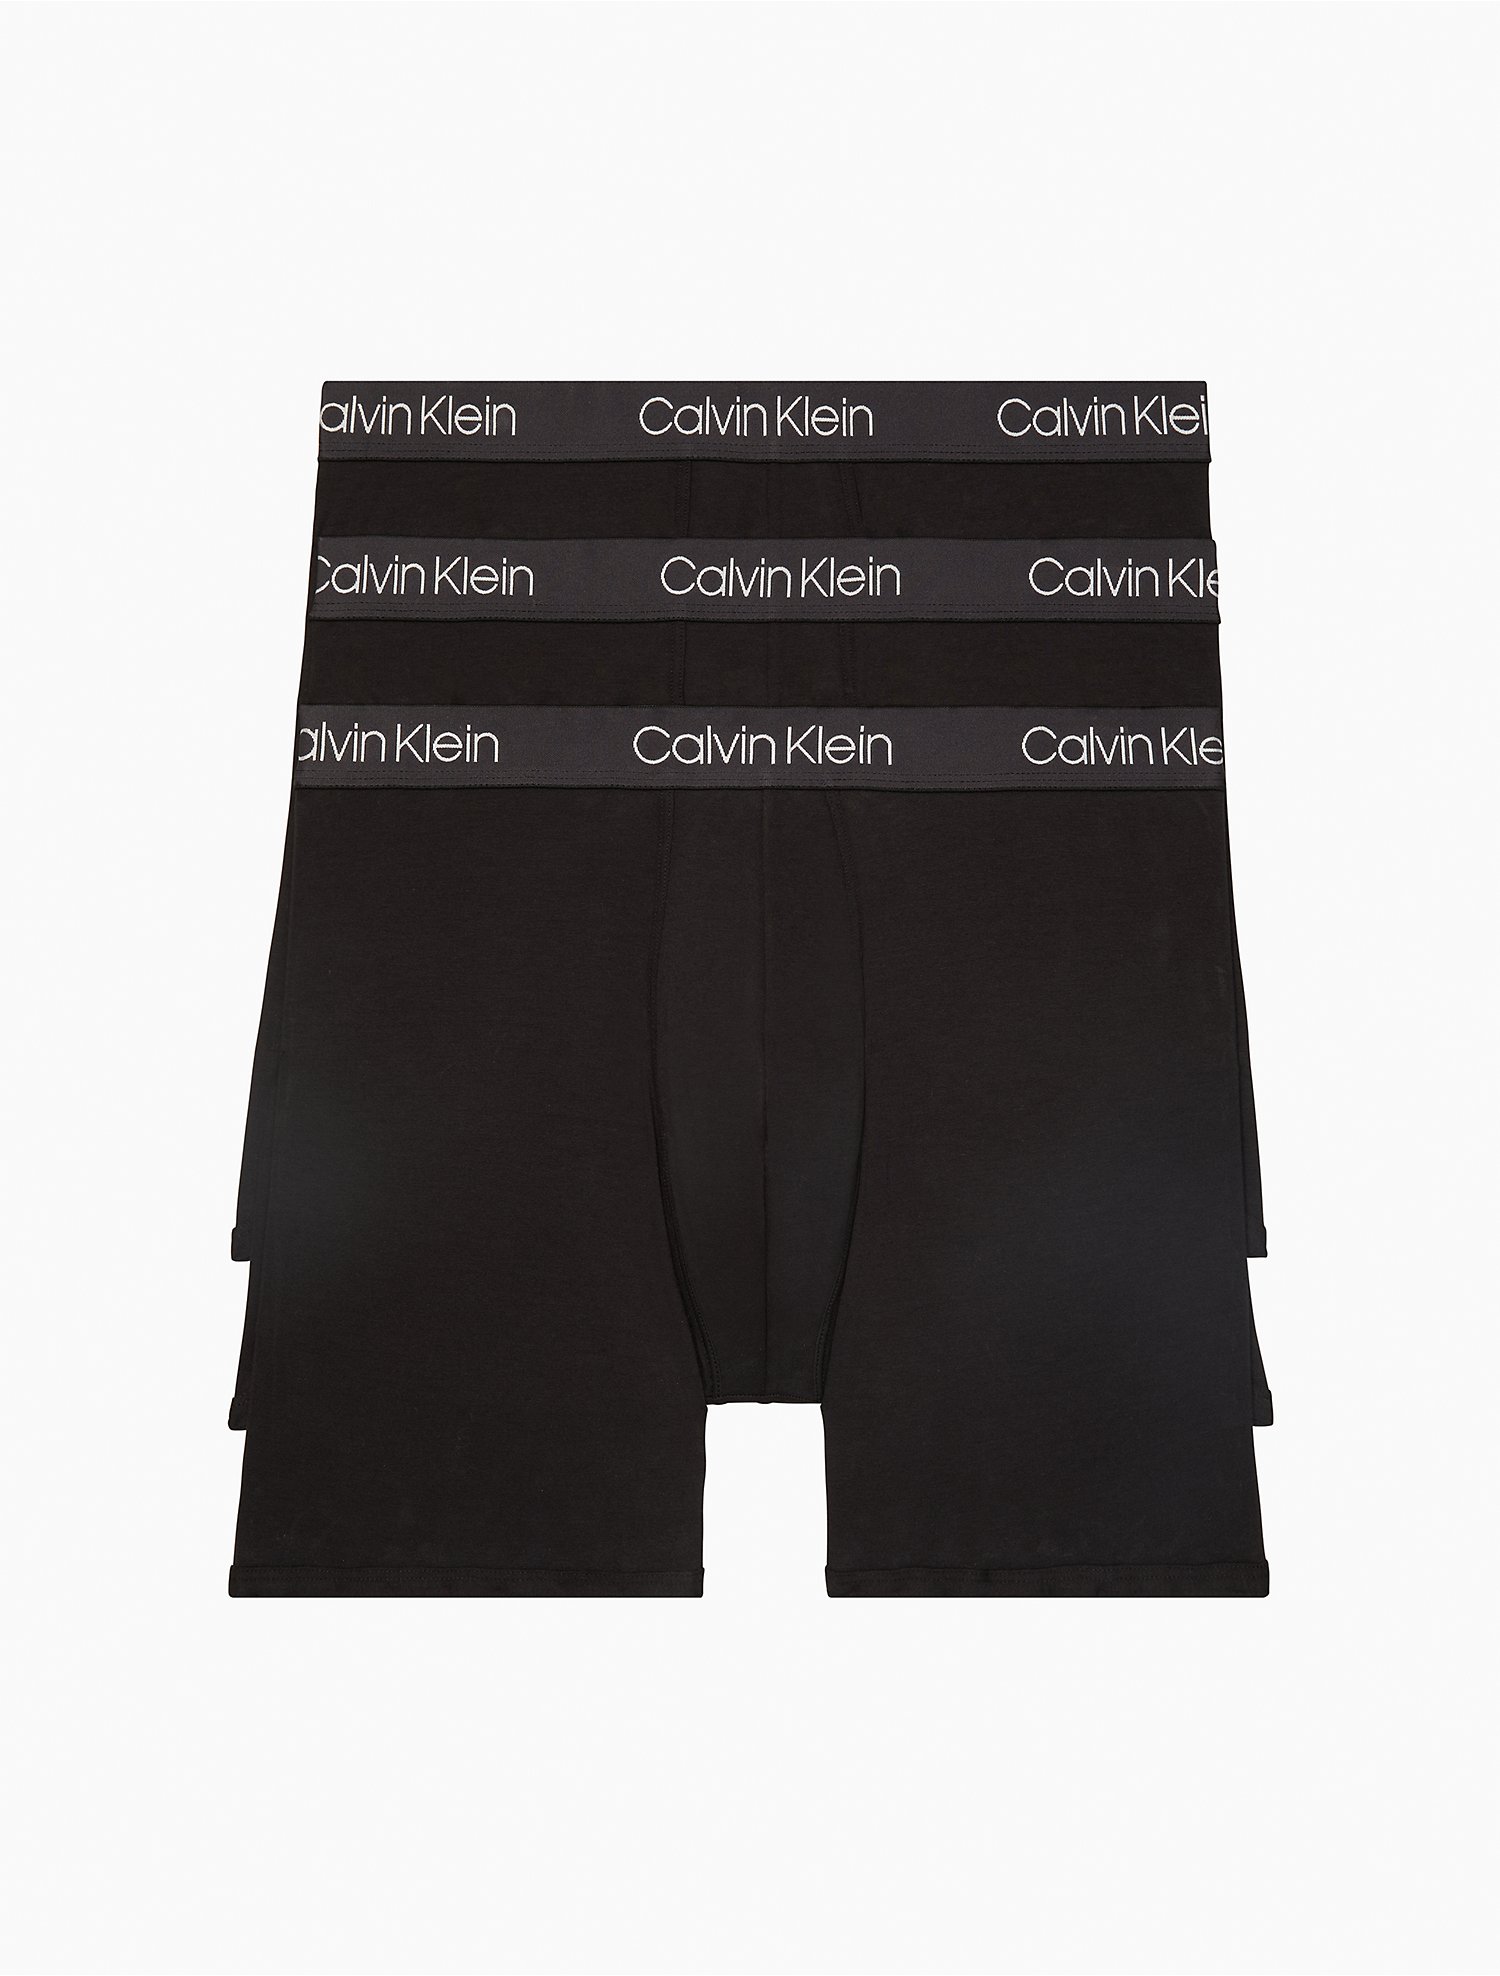 Actualizar 30+ imagen calvin klein pima cotton underwear